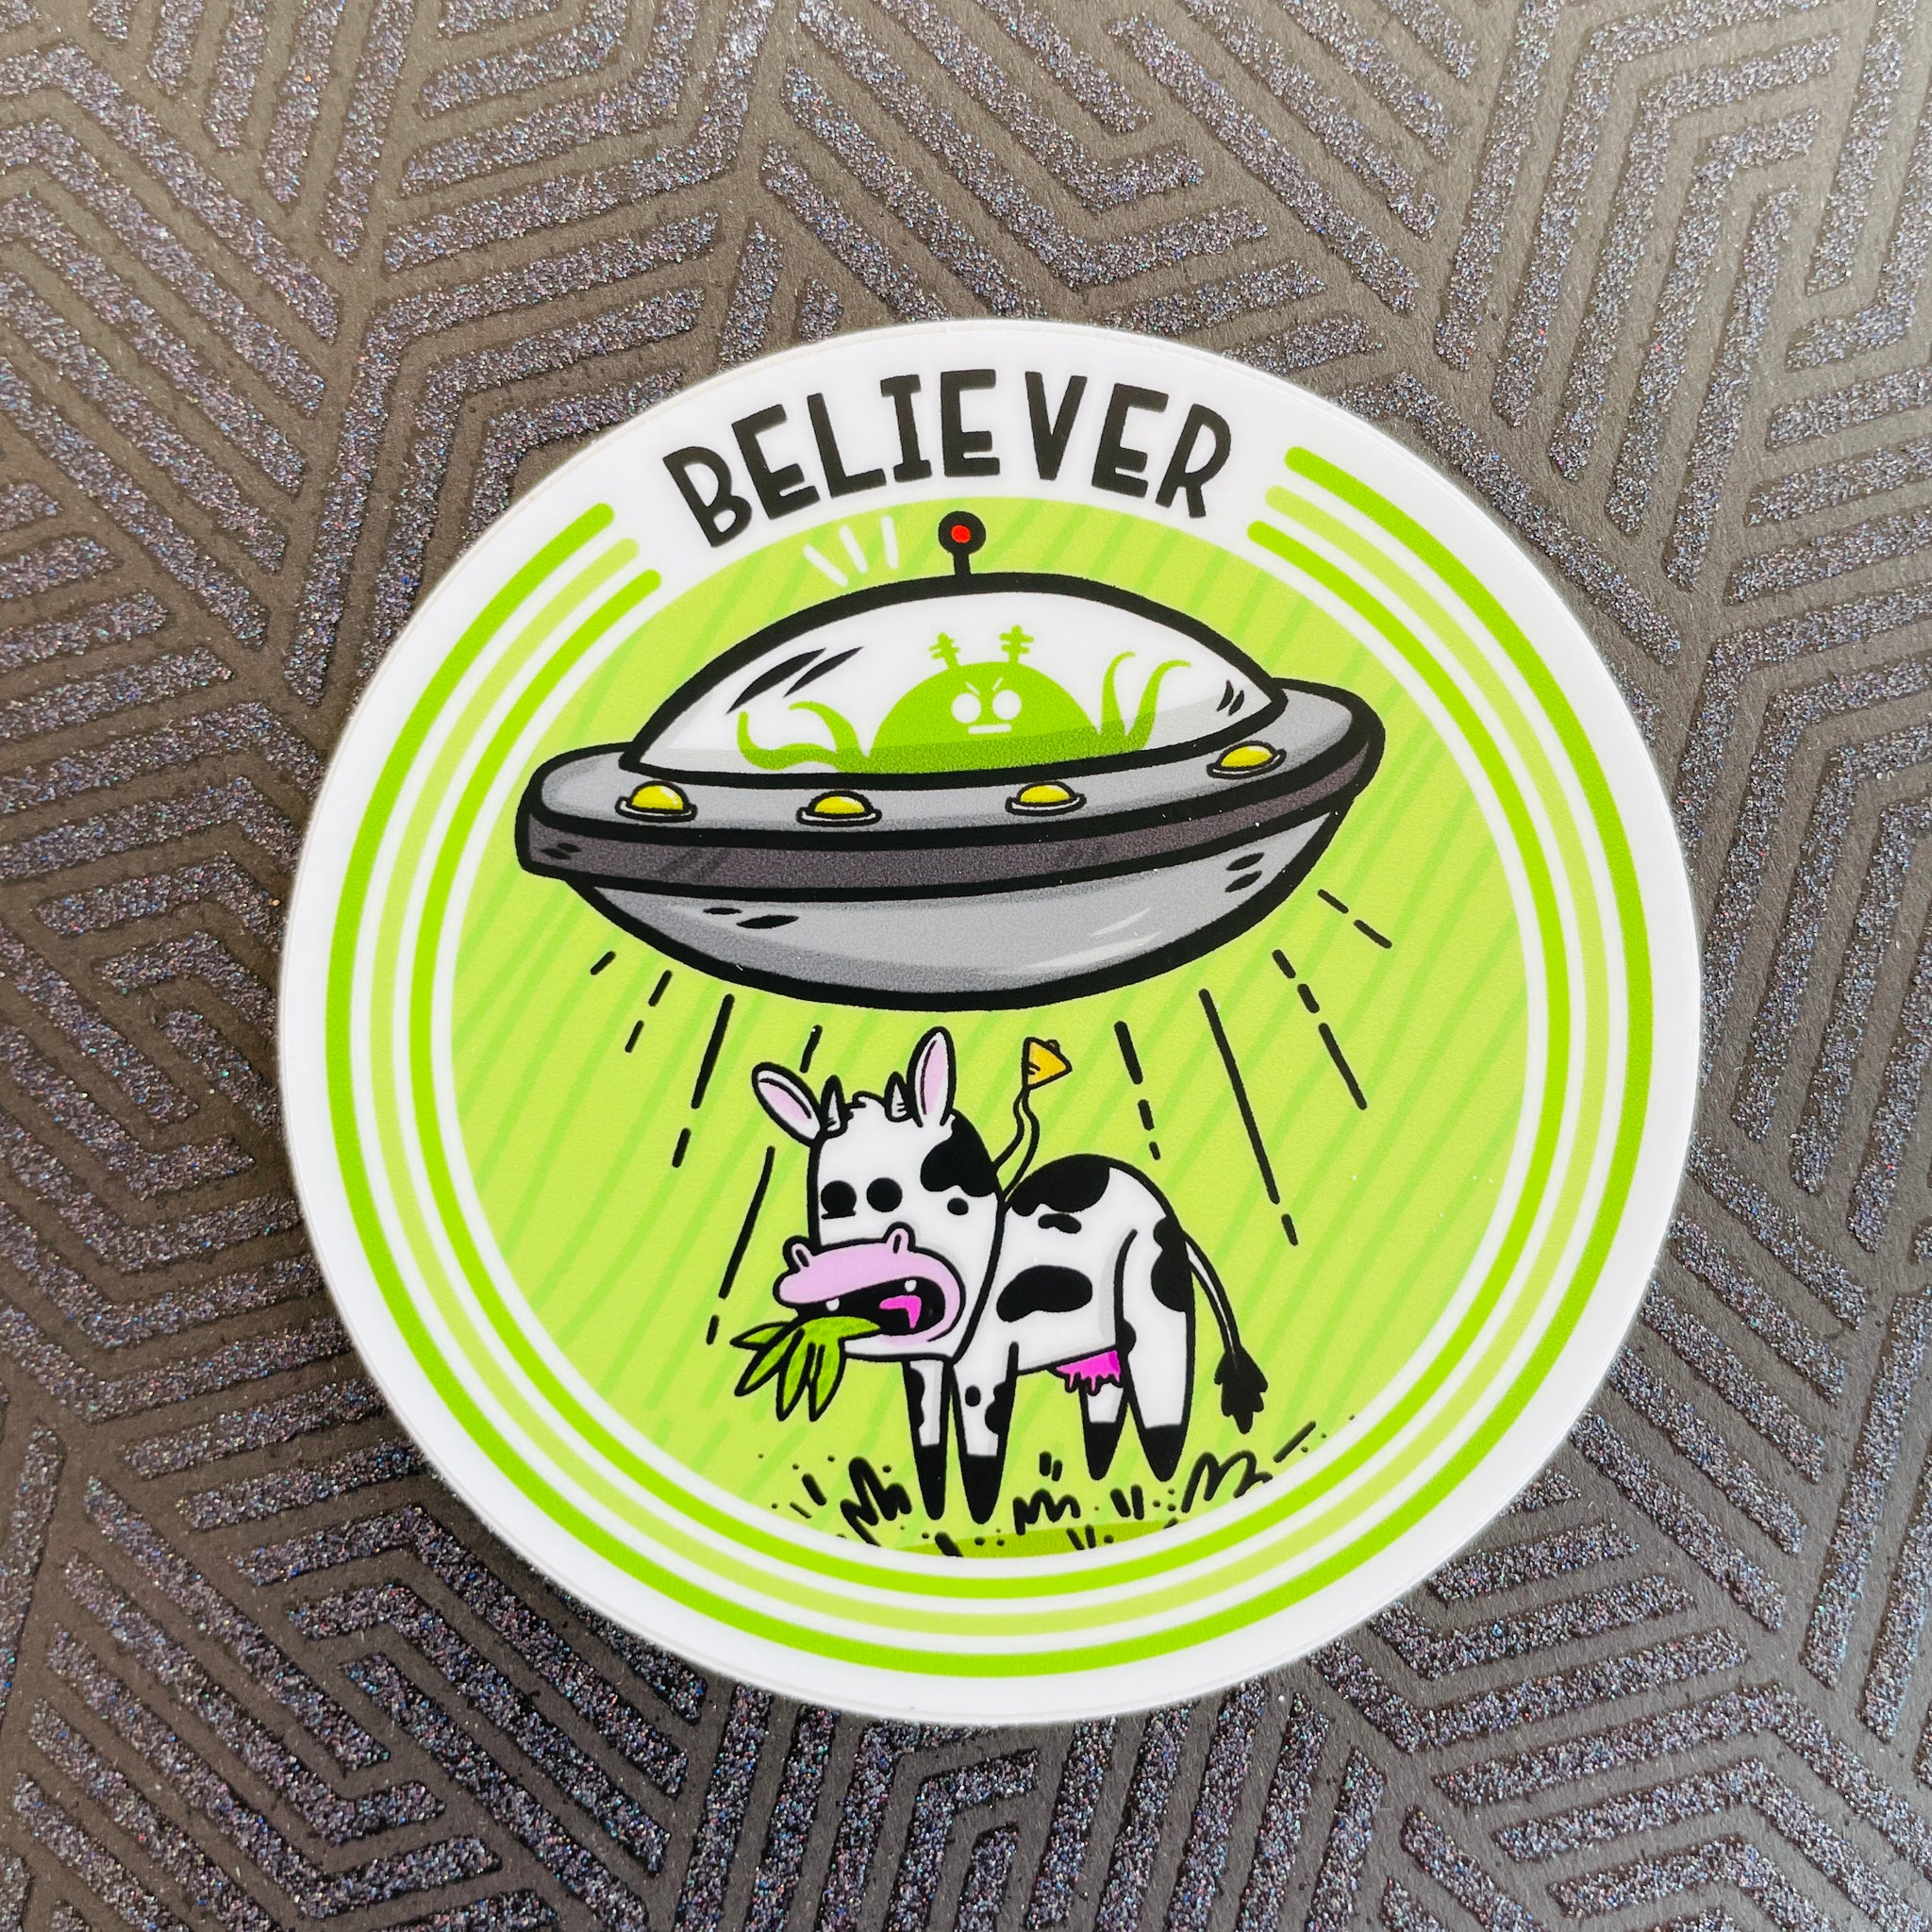 "UFO BELIEVER" Vinyl Sticker